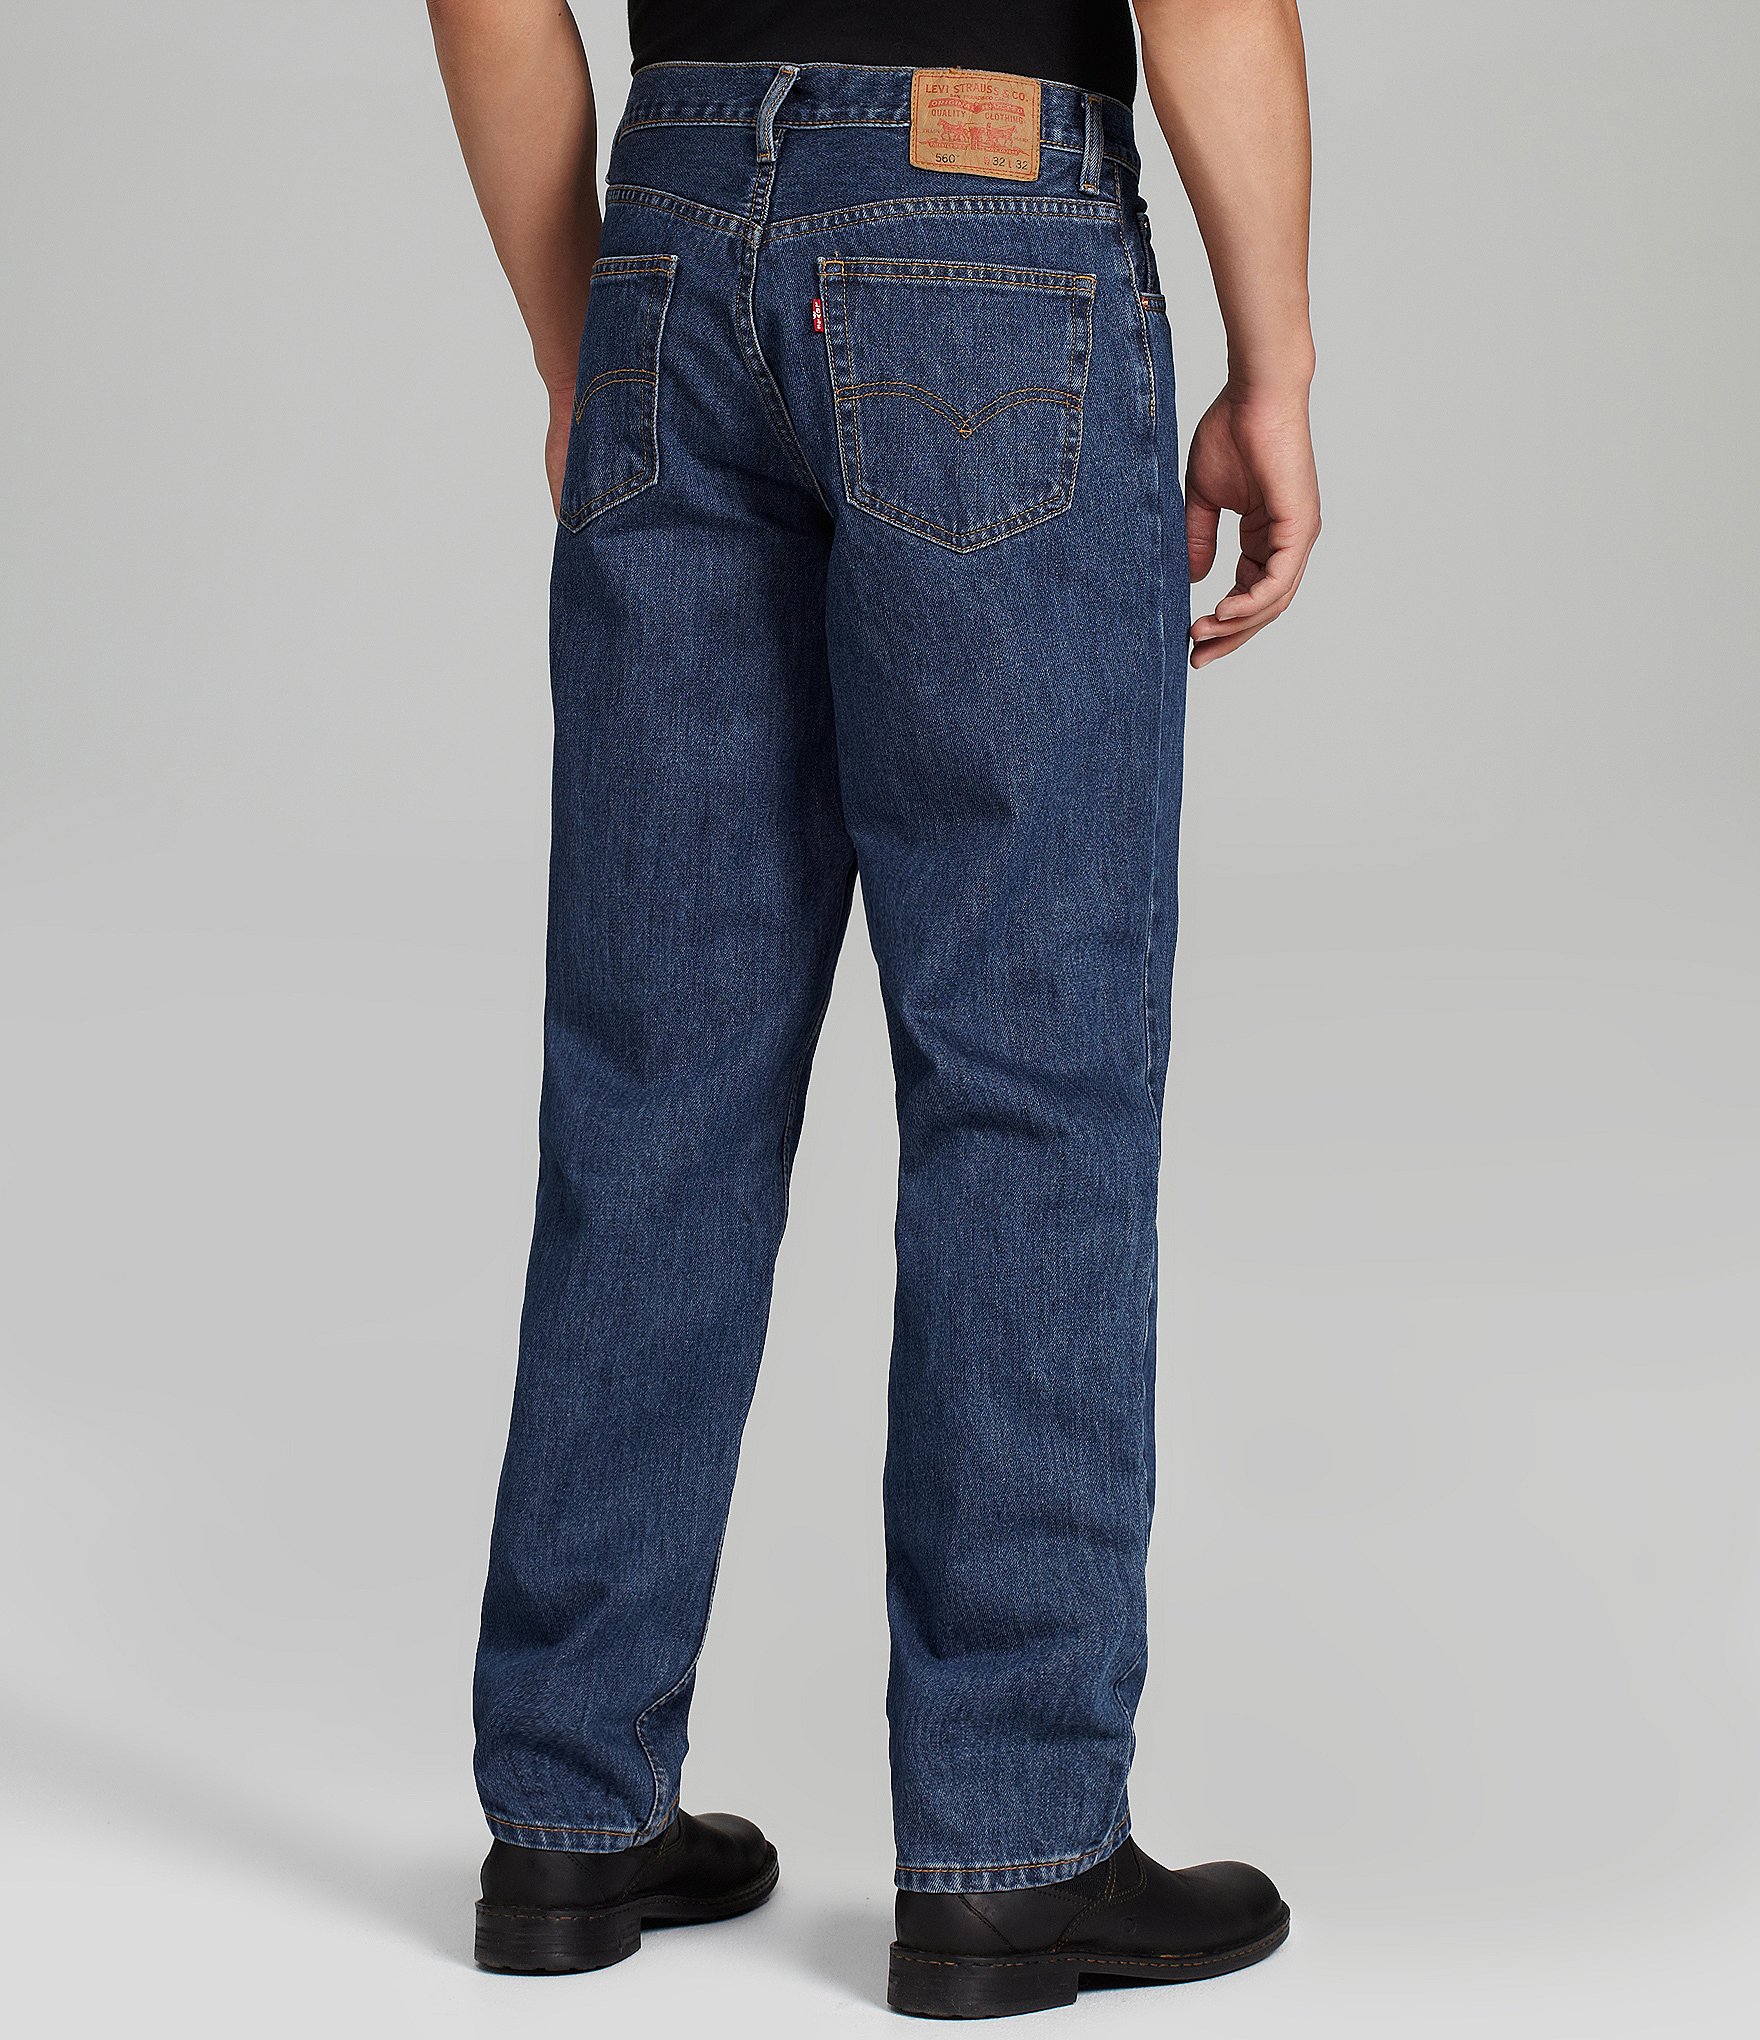 Levis Men's Big & Tall Jeans | Dillards